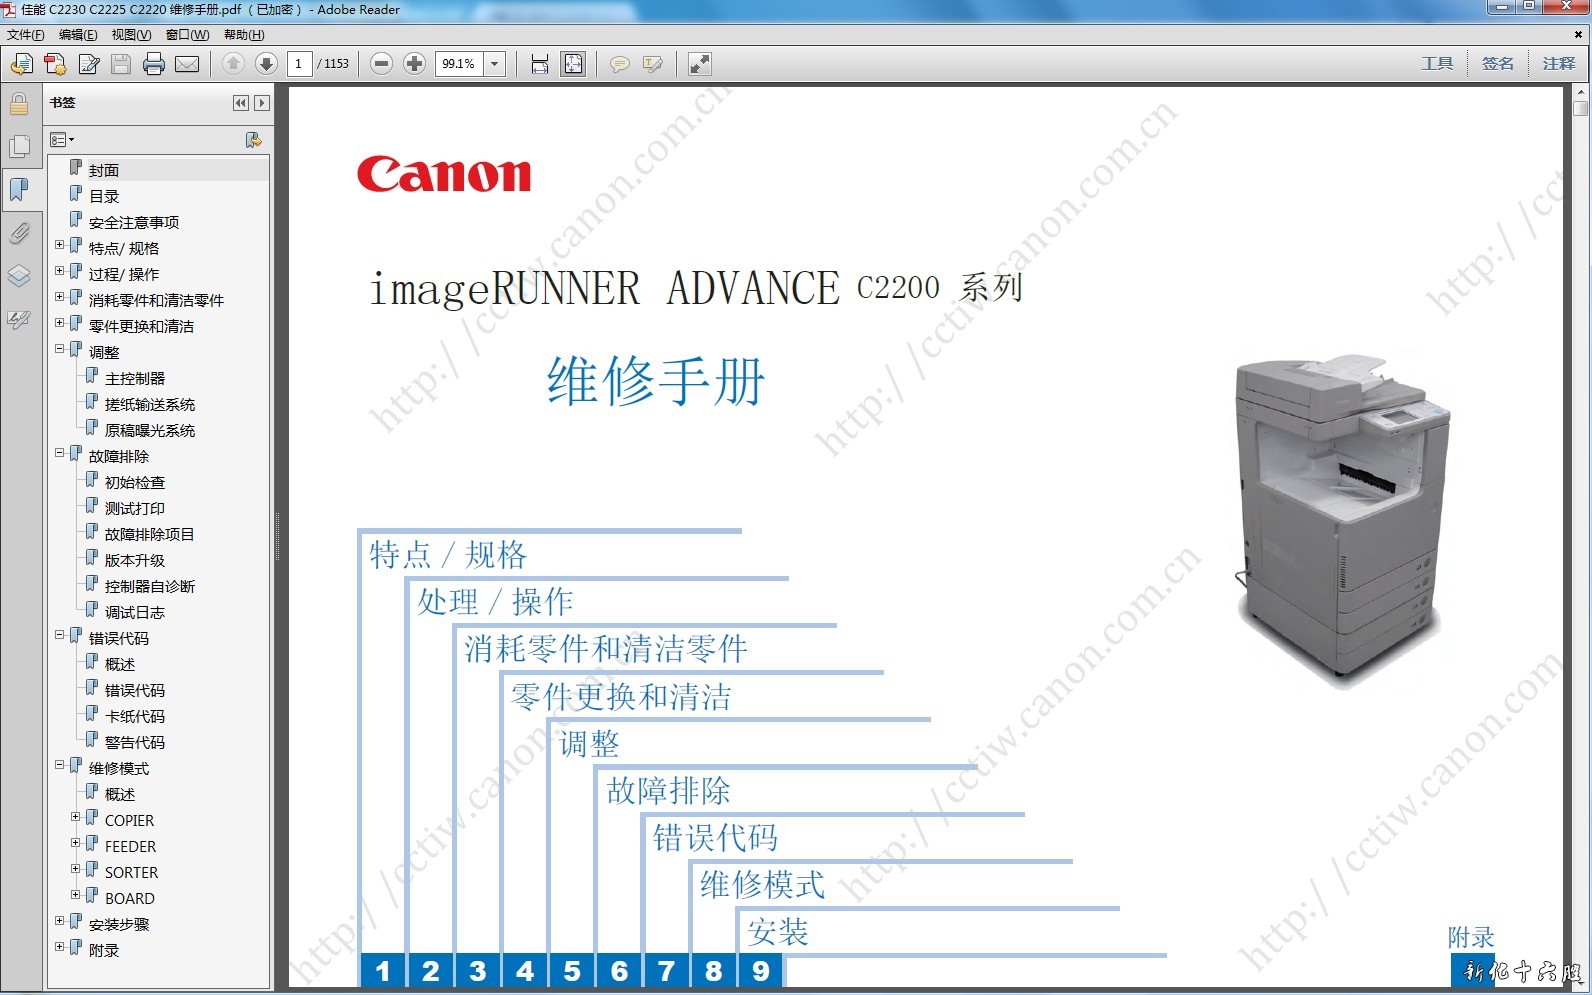 佳能 iR ADV C2230 C2225 C2220 彩色复印机中文维修手册.jpg